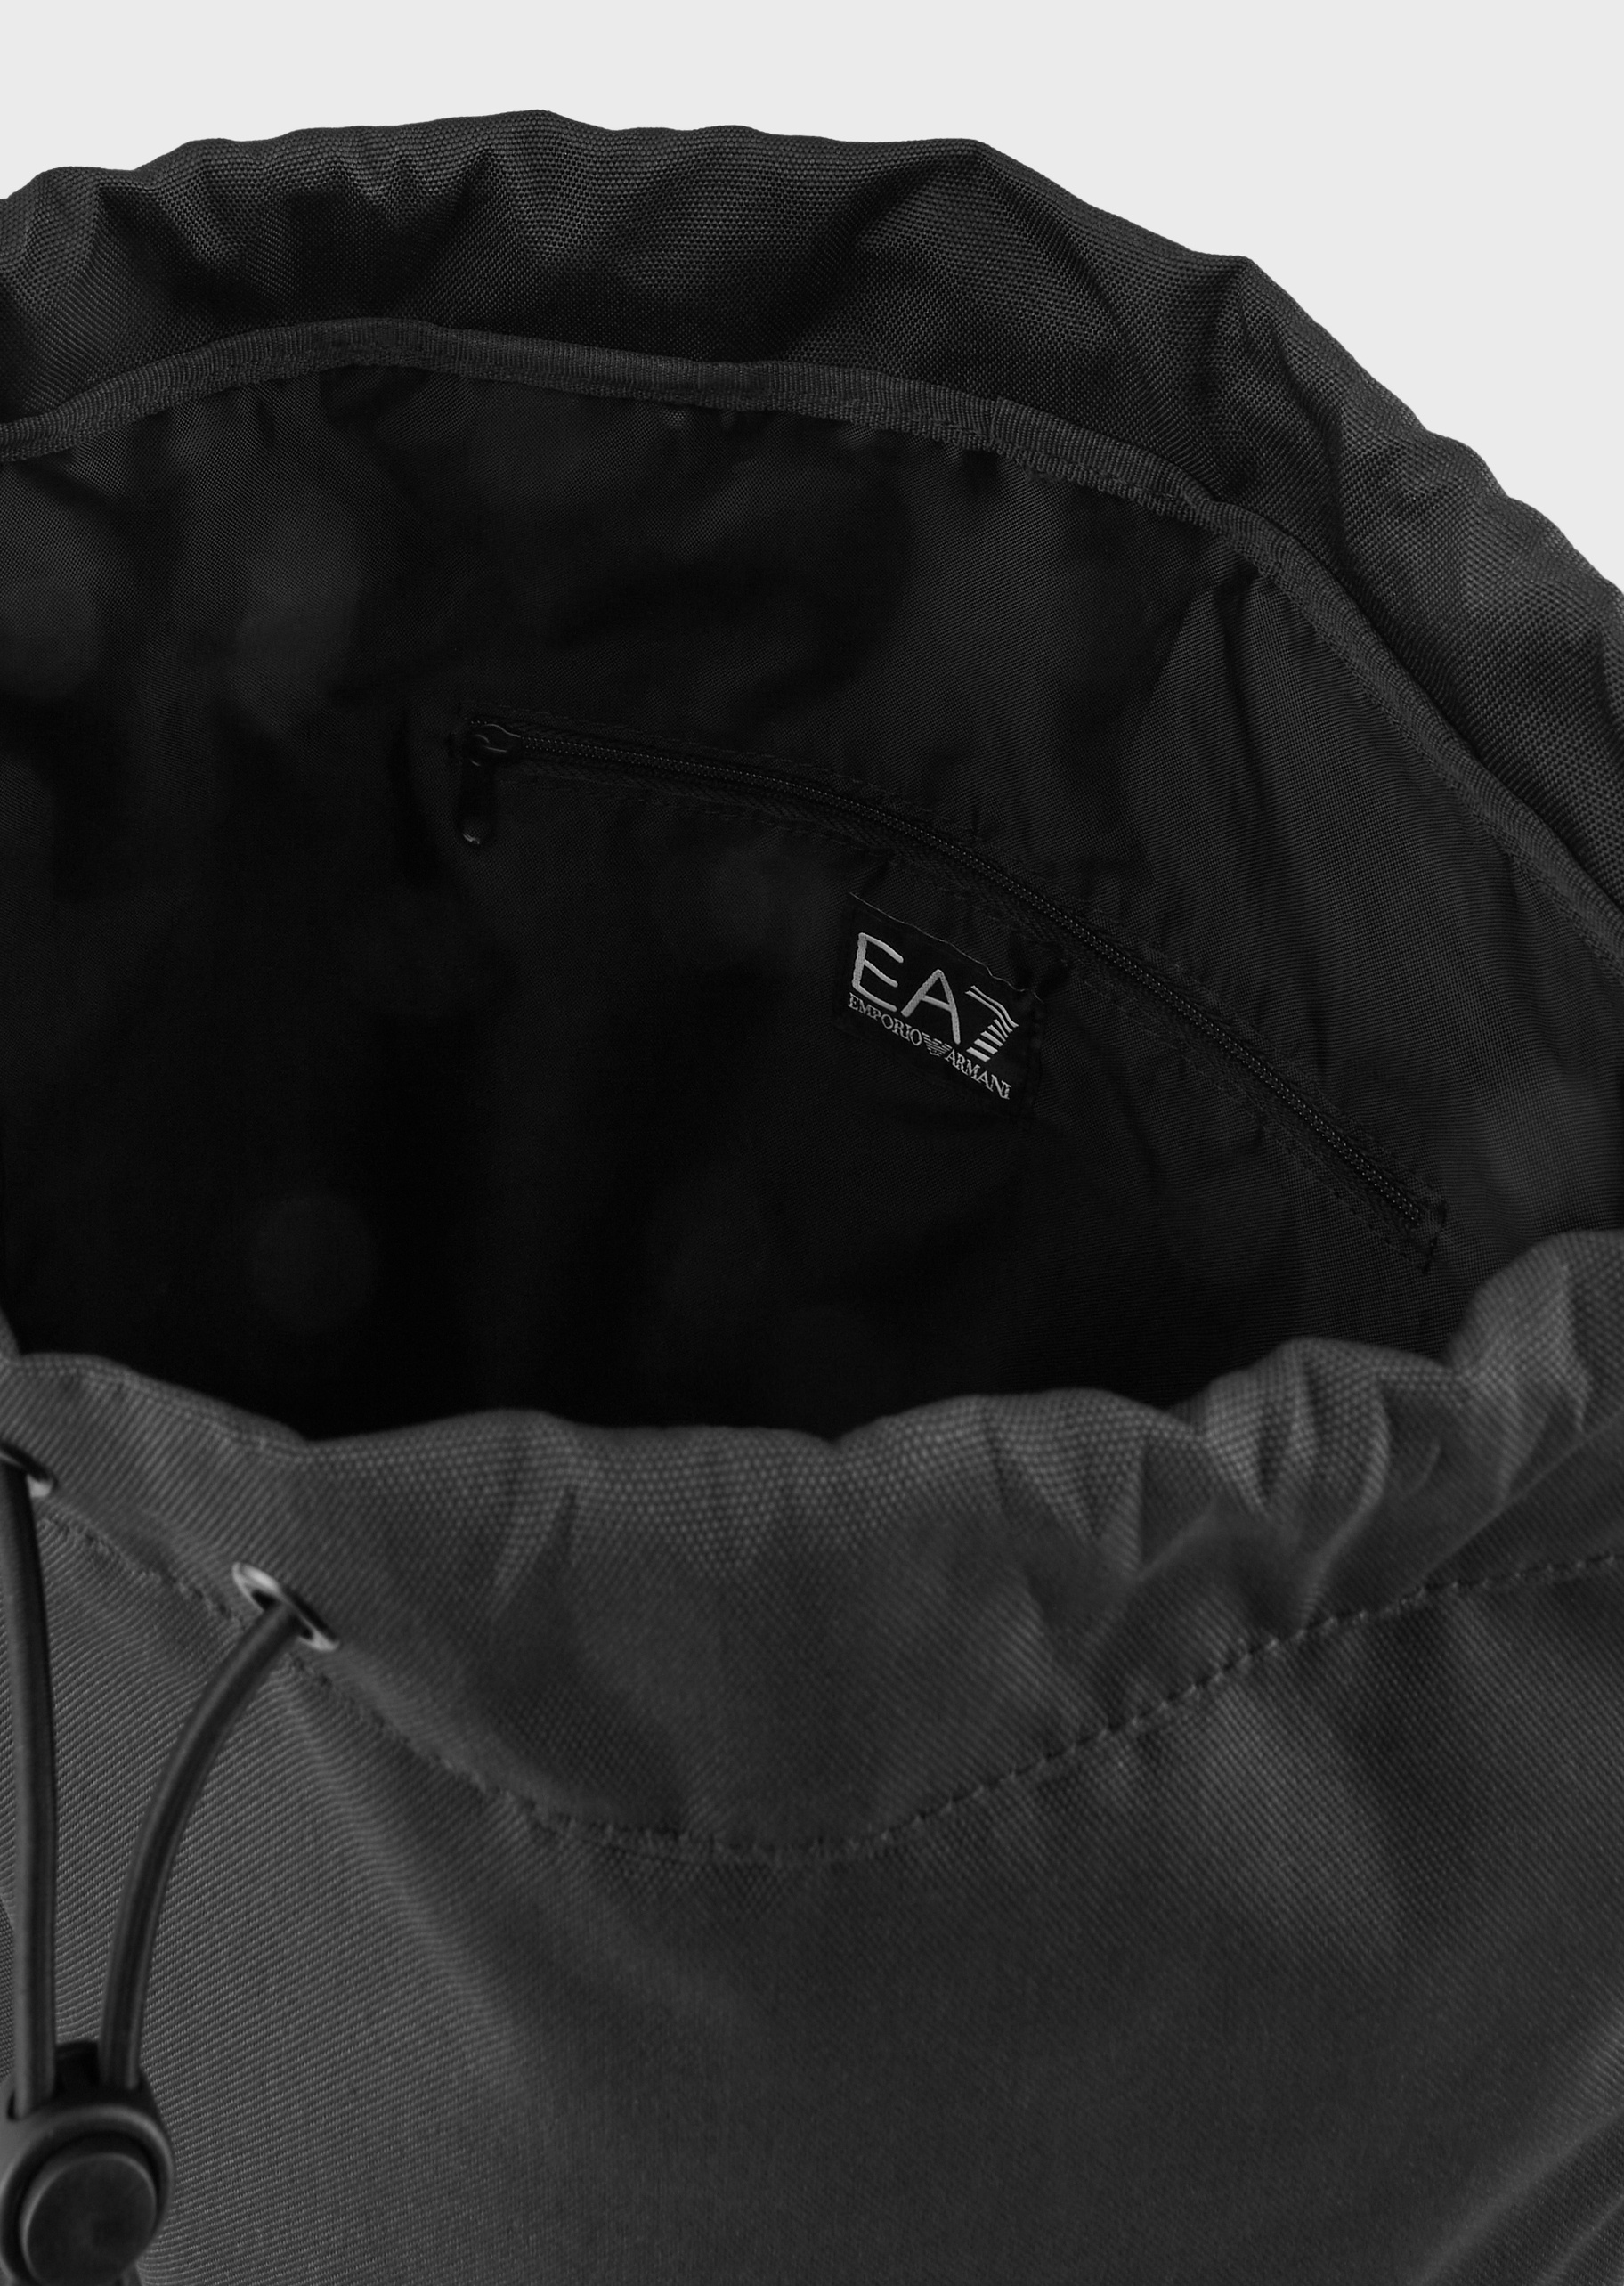 EA7 抽绳调节带双肩包